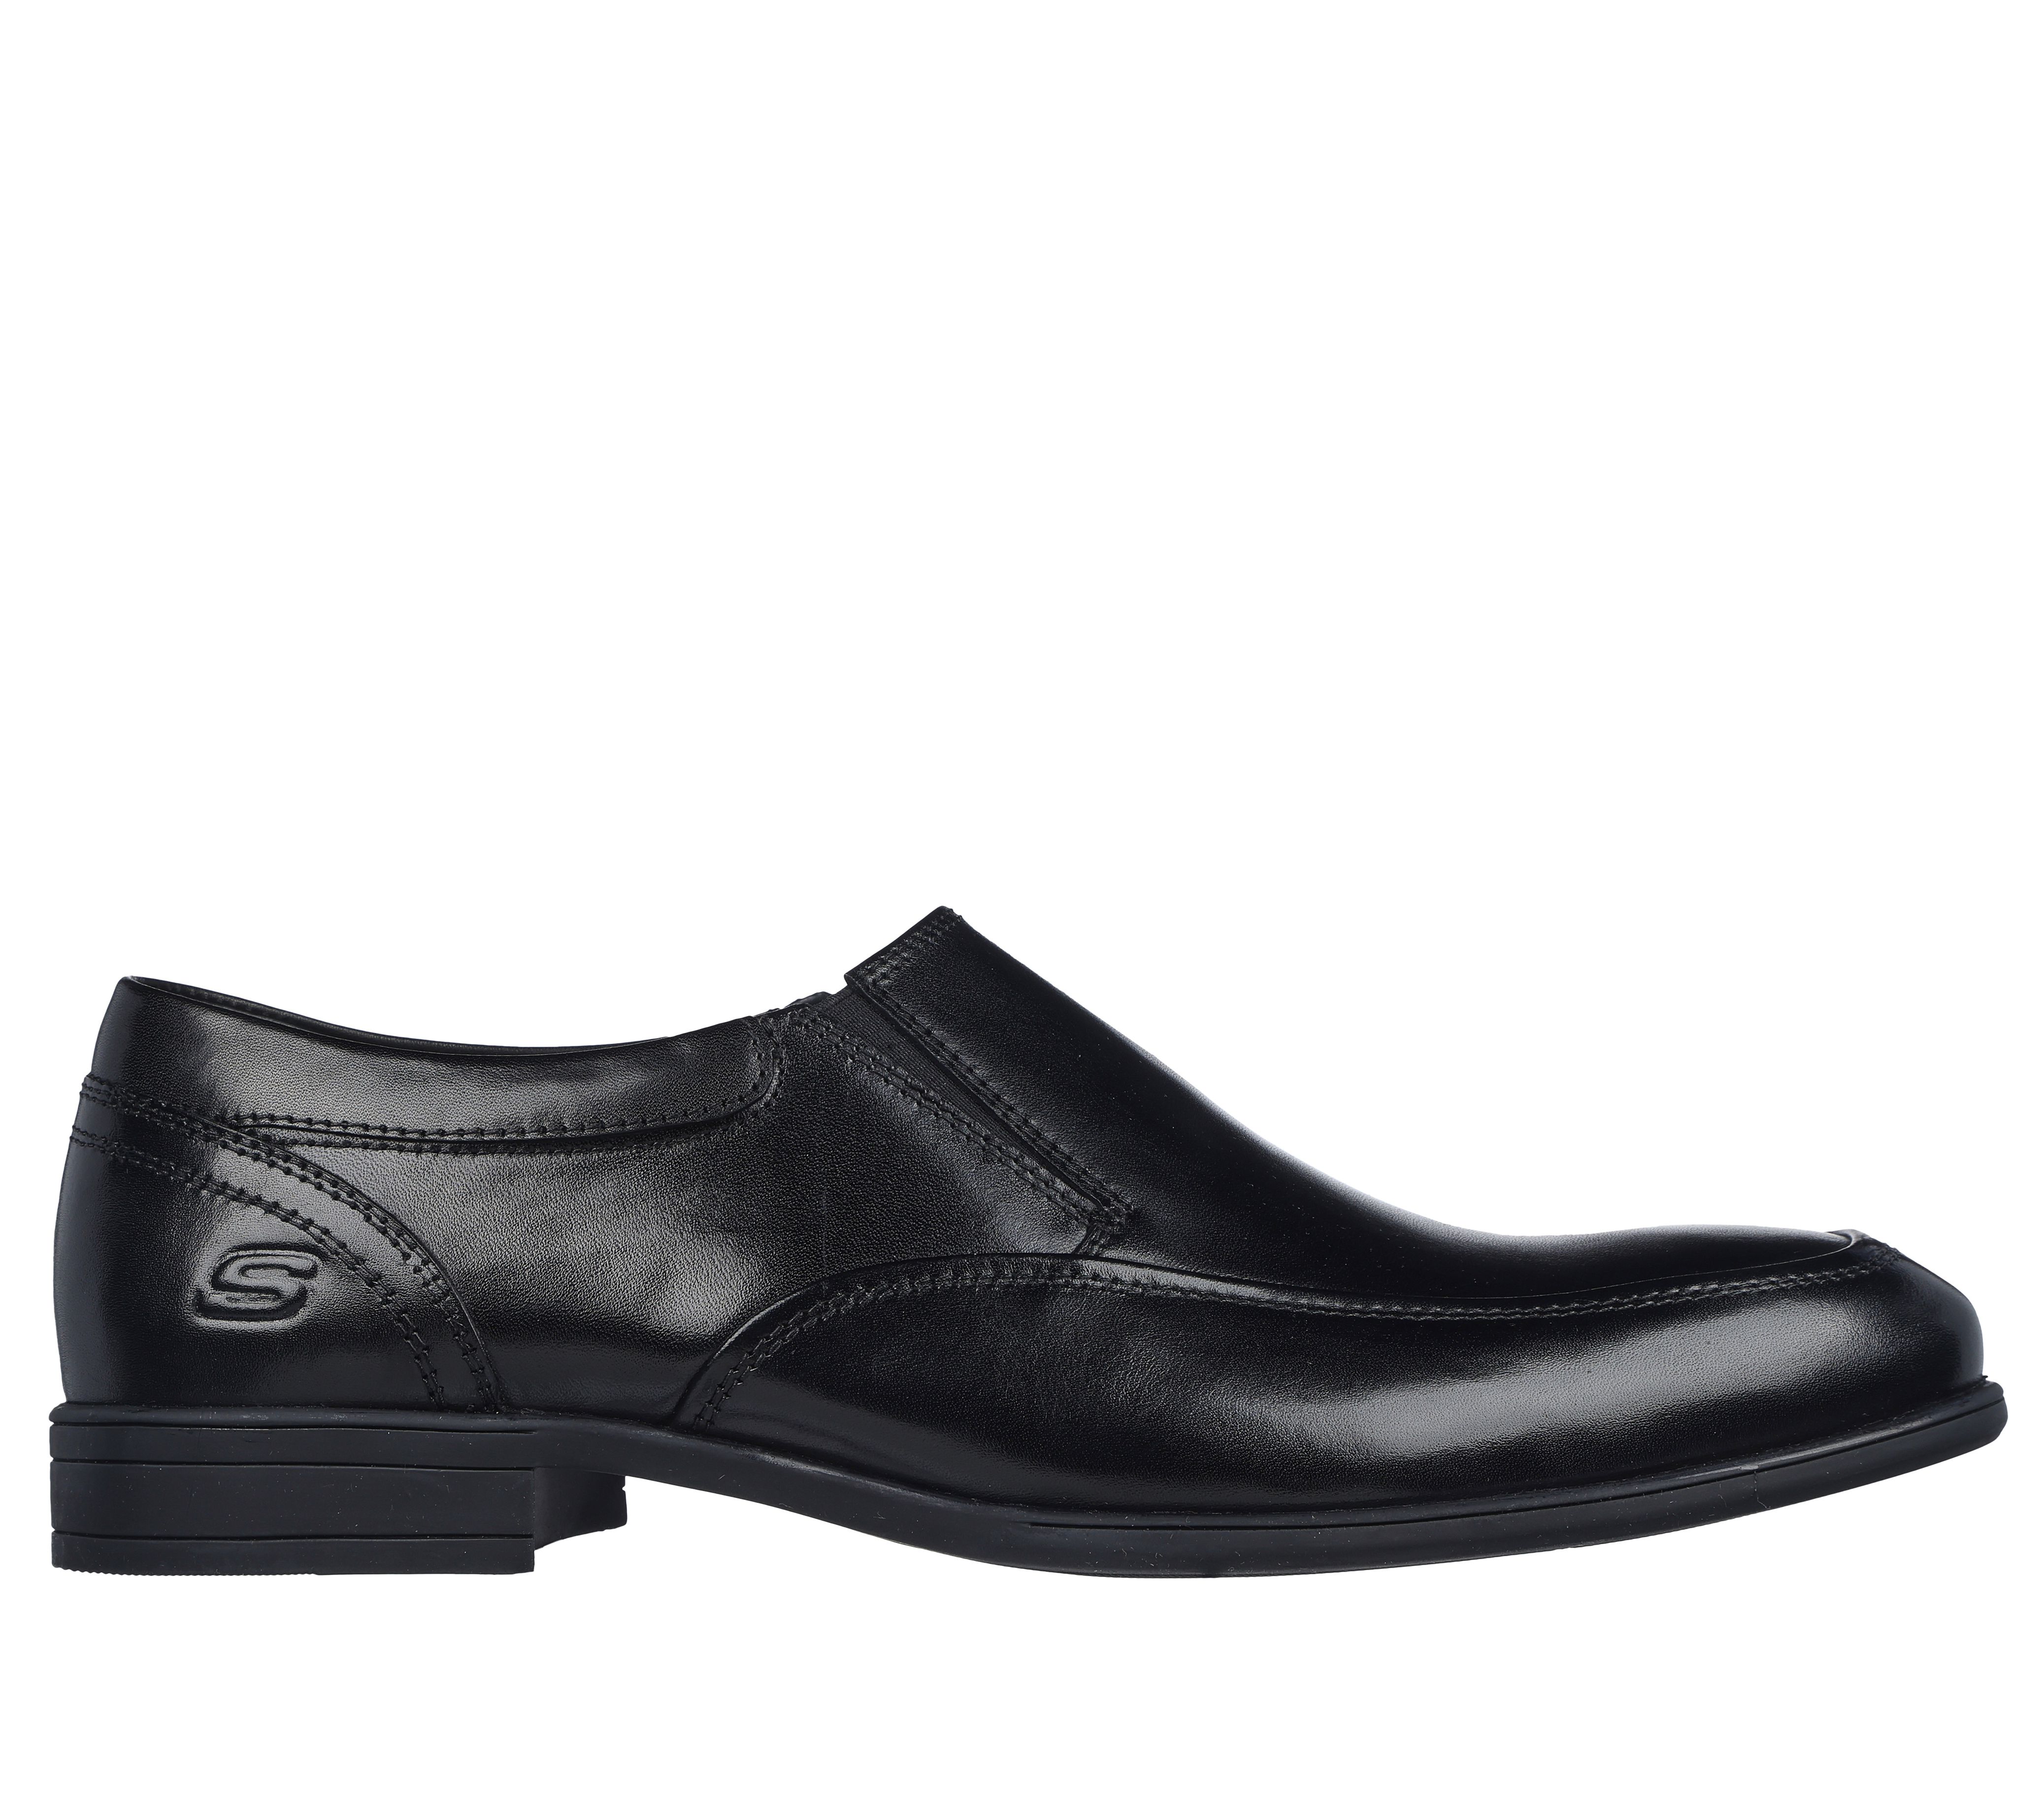 sketchers dress shoes for men